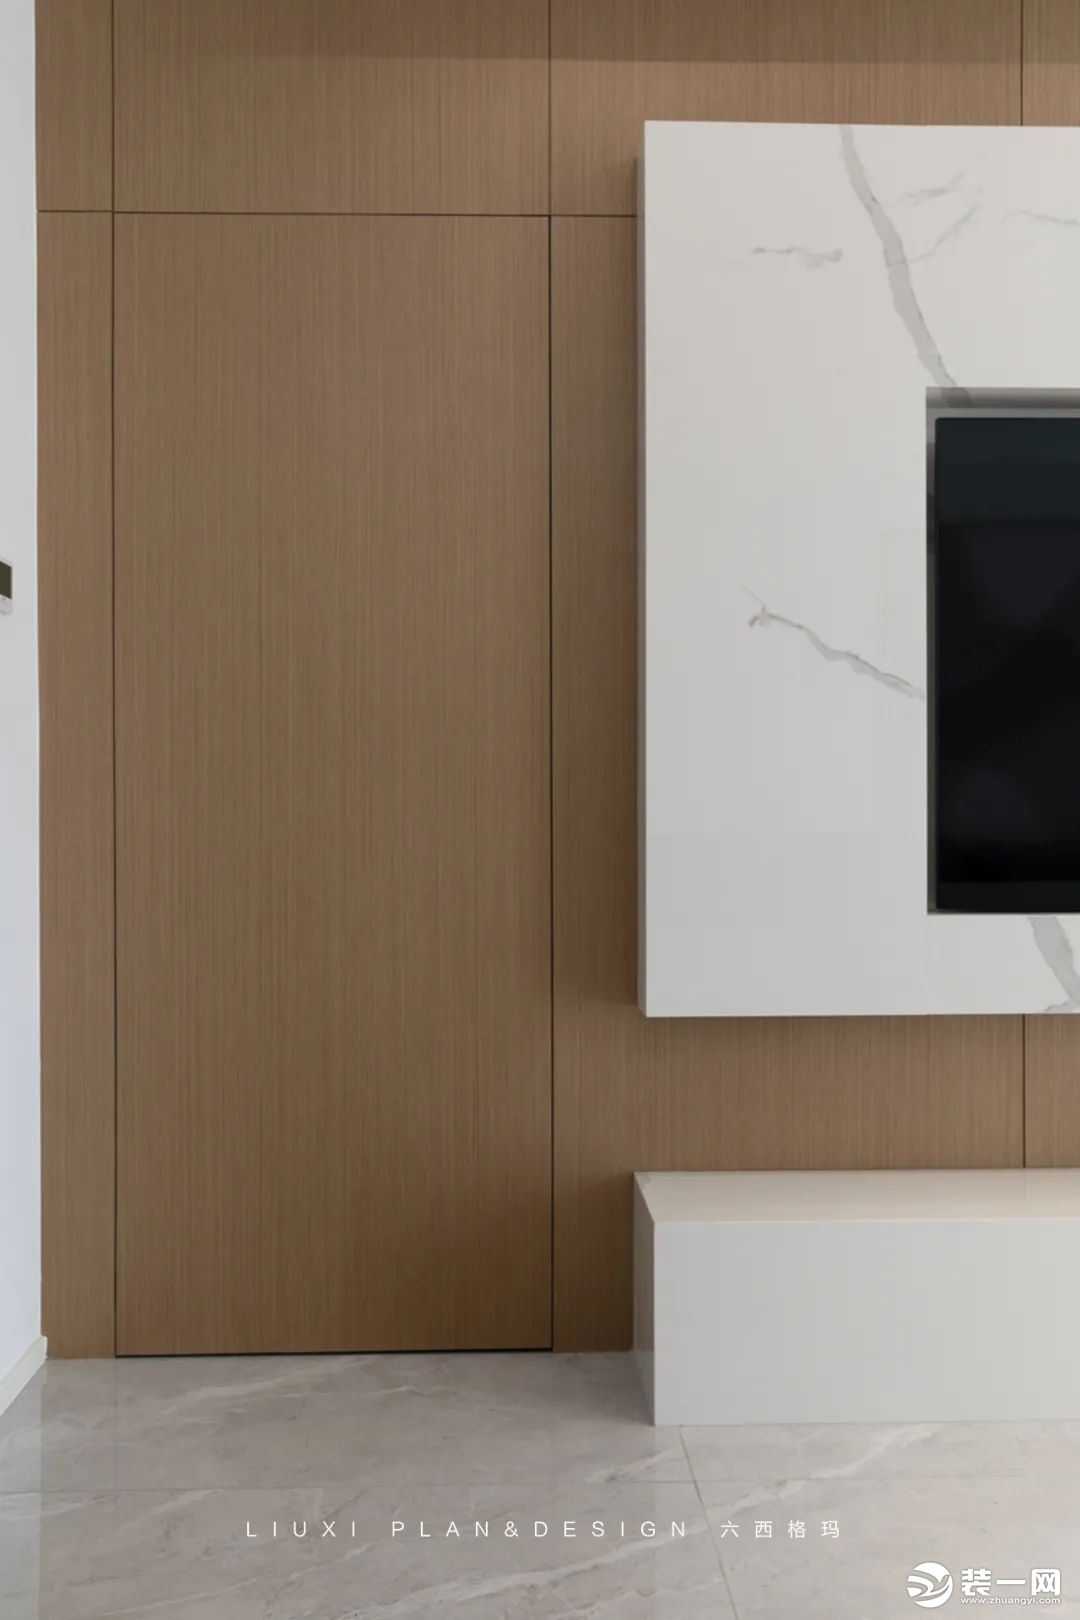 有了木饰面的加持后，电视墙左侧通往次卧的隐形门在材质和颜色上达成统一，做到了真正的“隐形”。